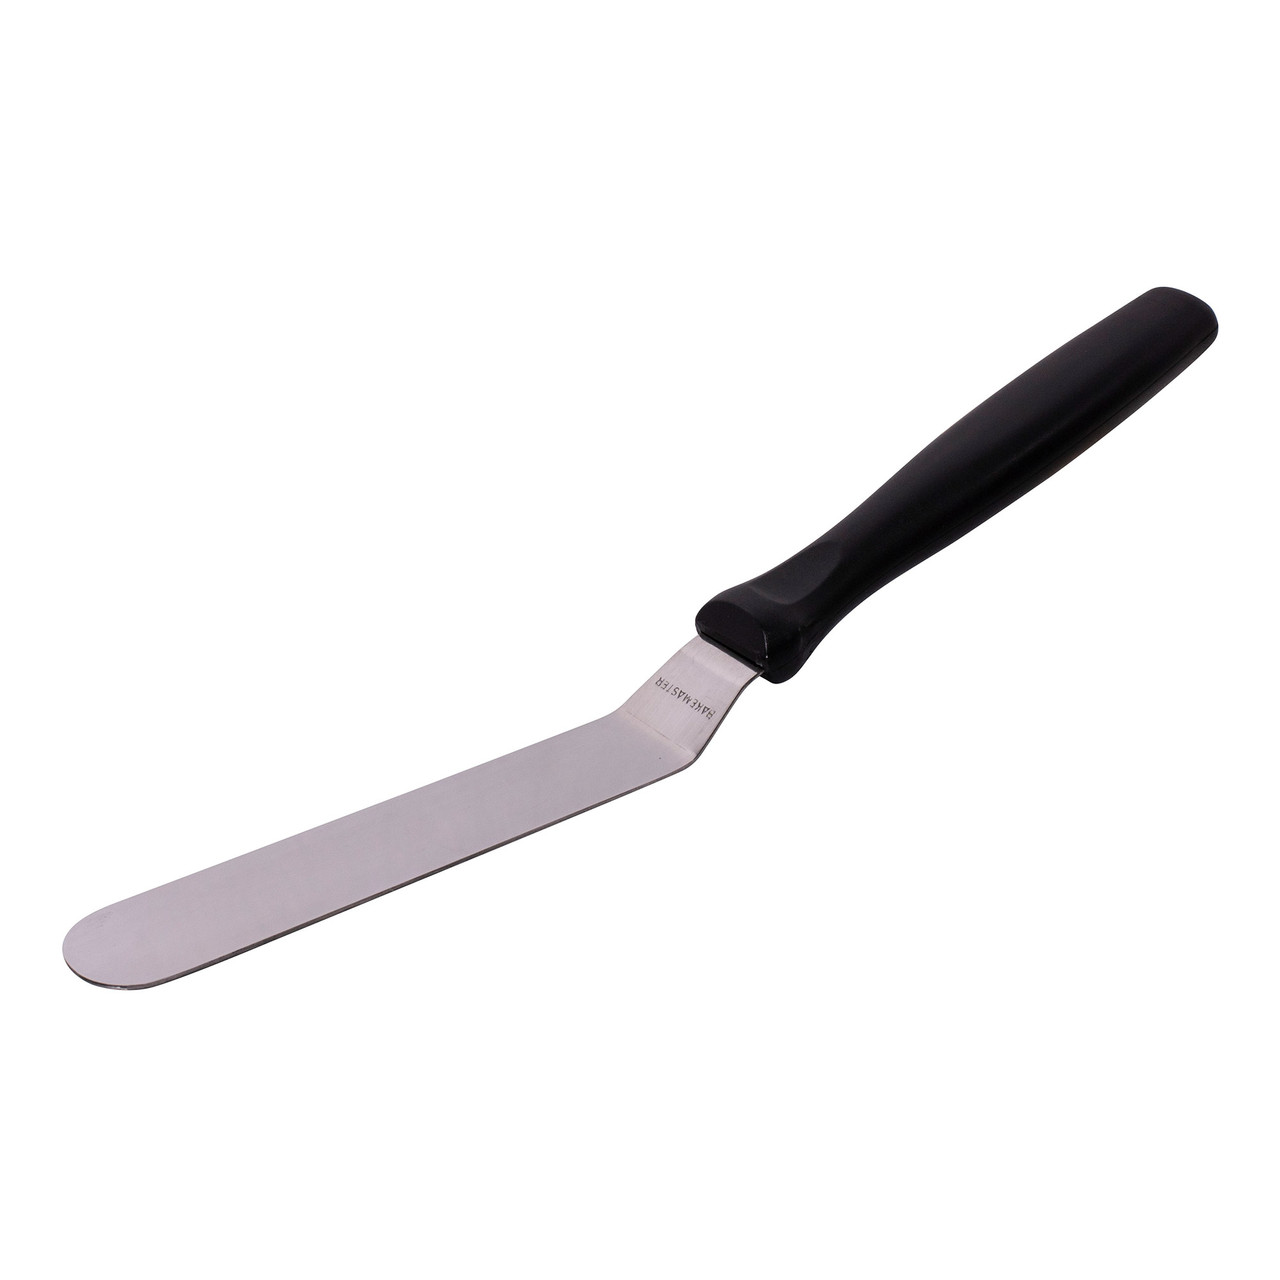 Cranked Palette Knife 11.5cm/4.5